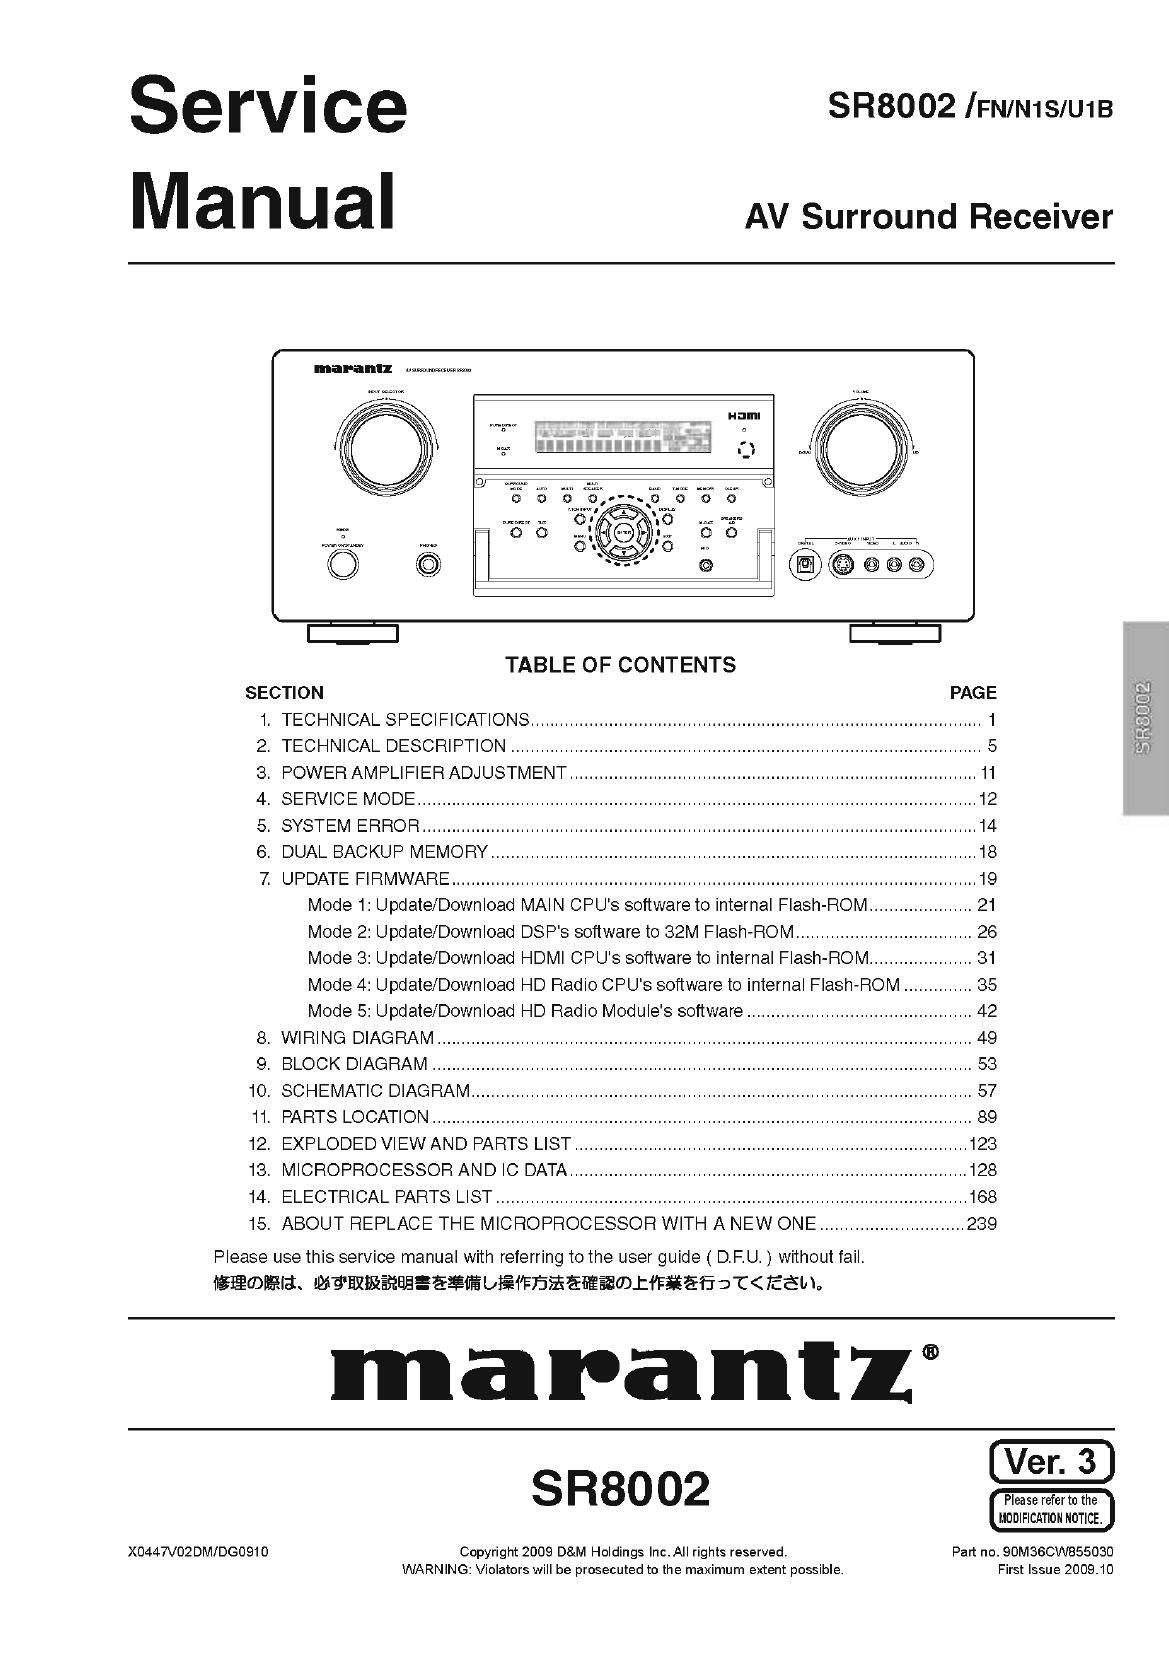 Marantz SR 8002 Service Manual